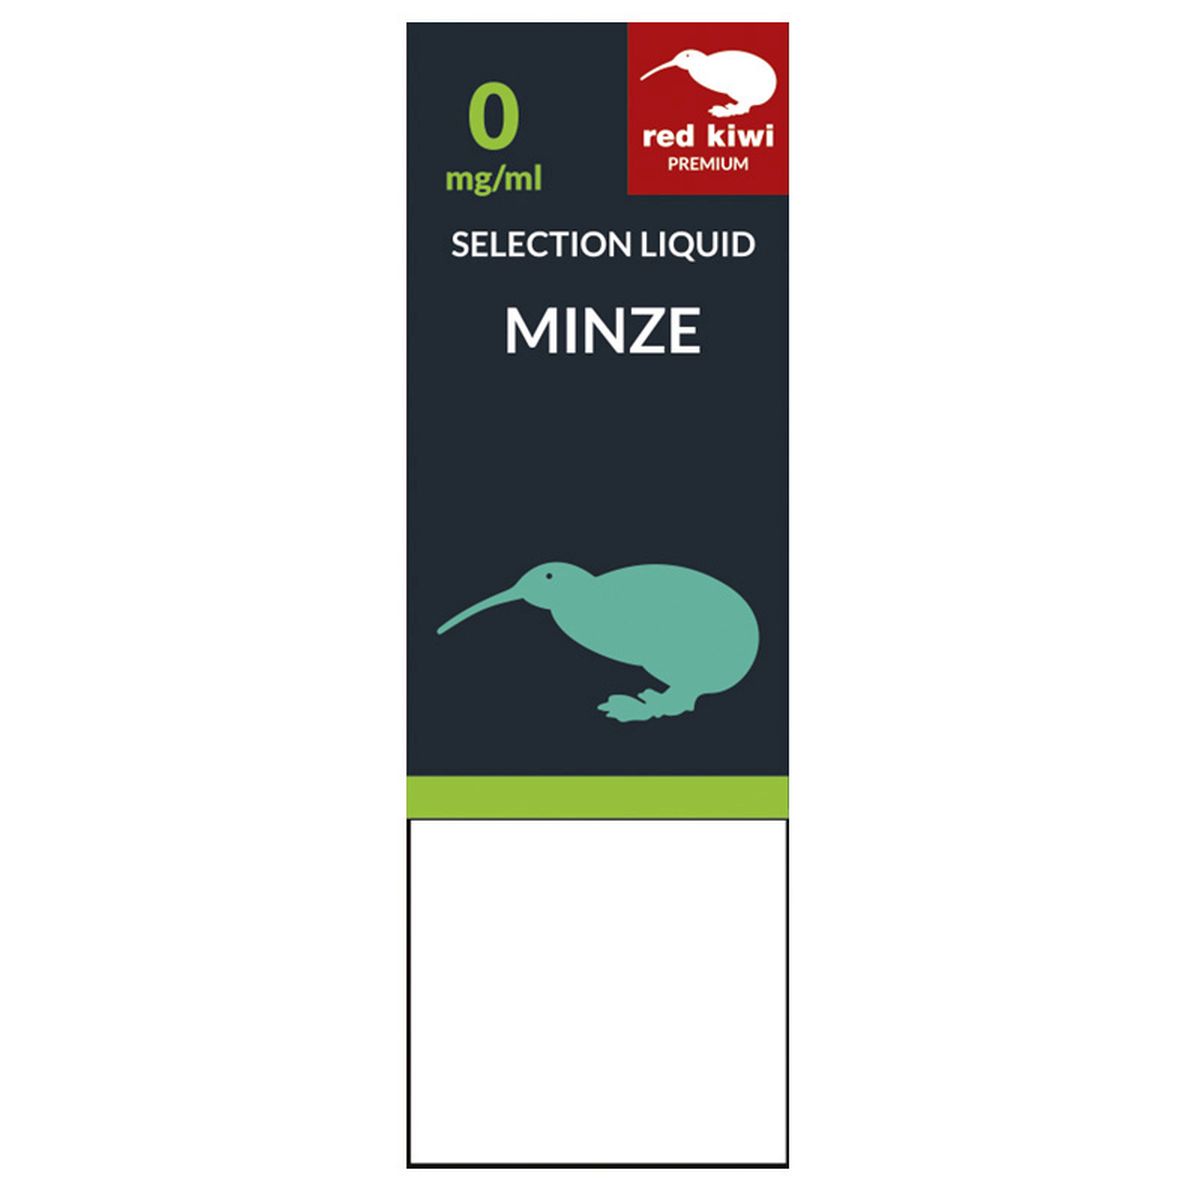 Red Kiwi Red Kiwi eLiquid Selection Minze 0mg Nikotin/ml bei www.Tabakring.de kaufen